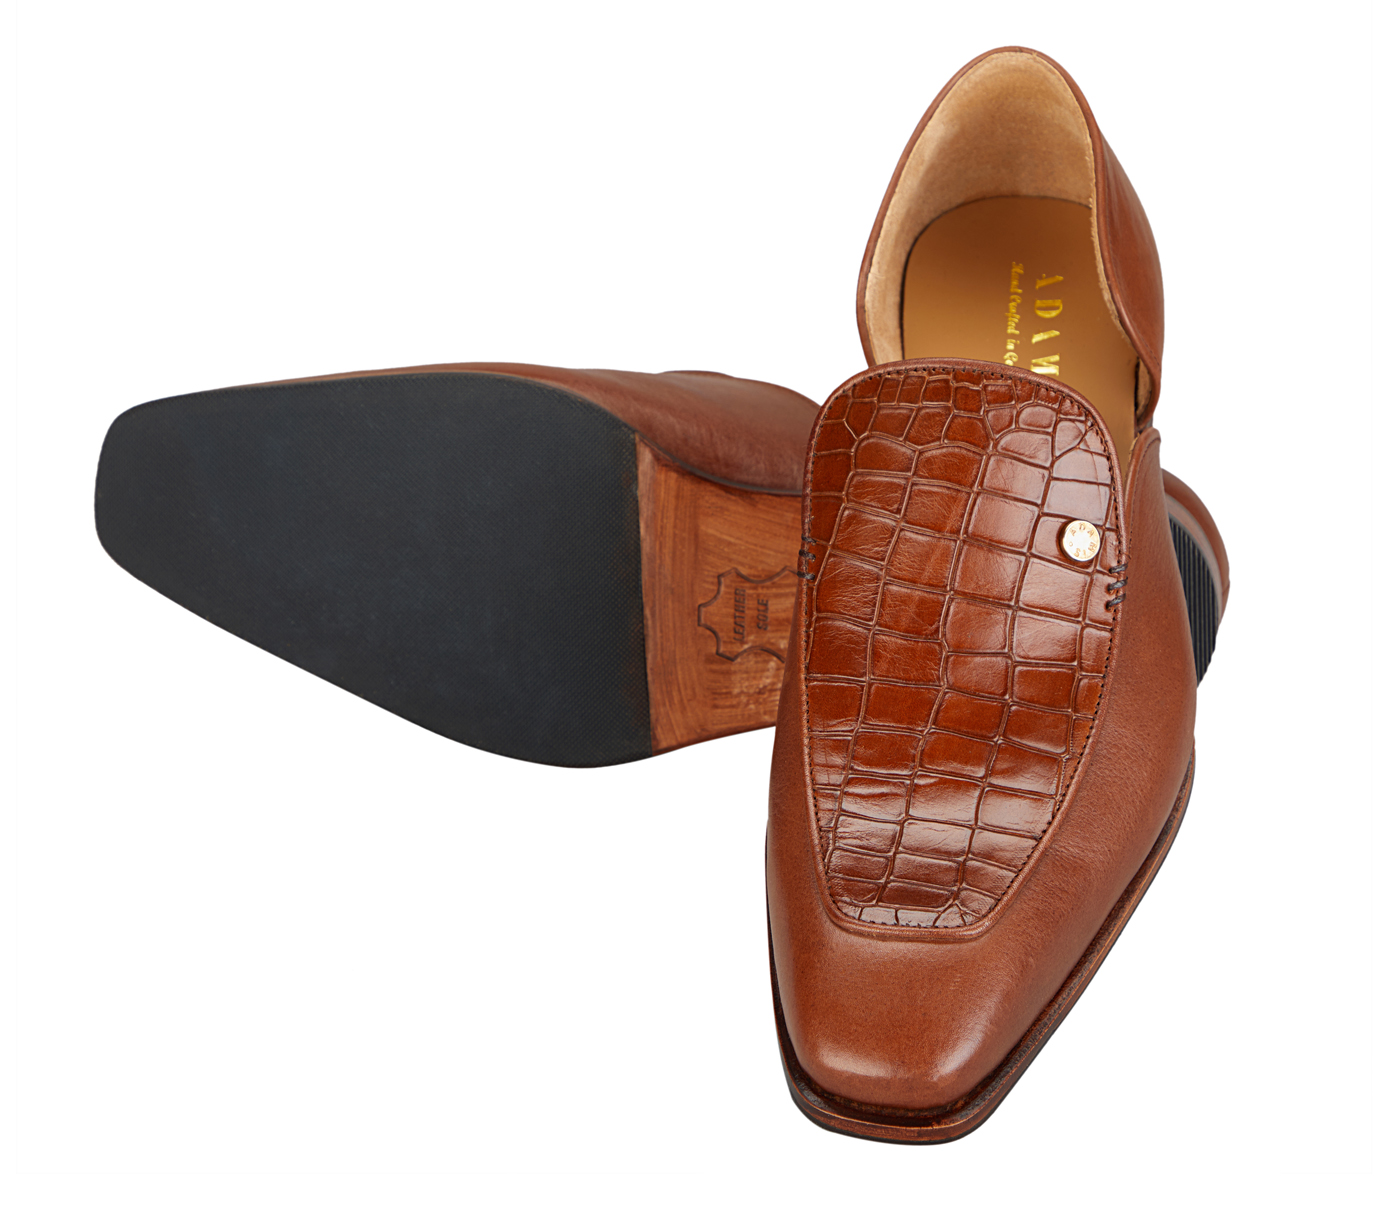 PF42-Adamis Pure Leather Footwear For Men- - Tan